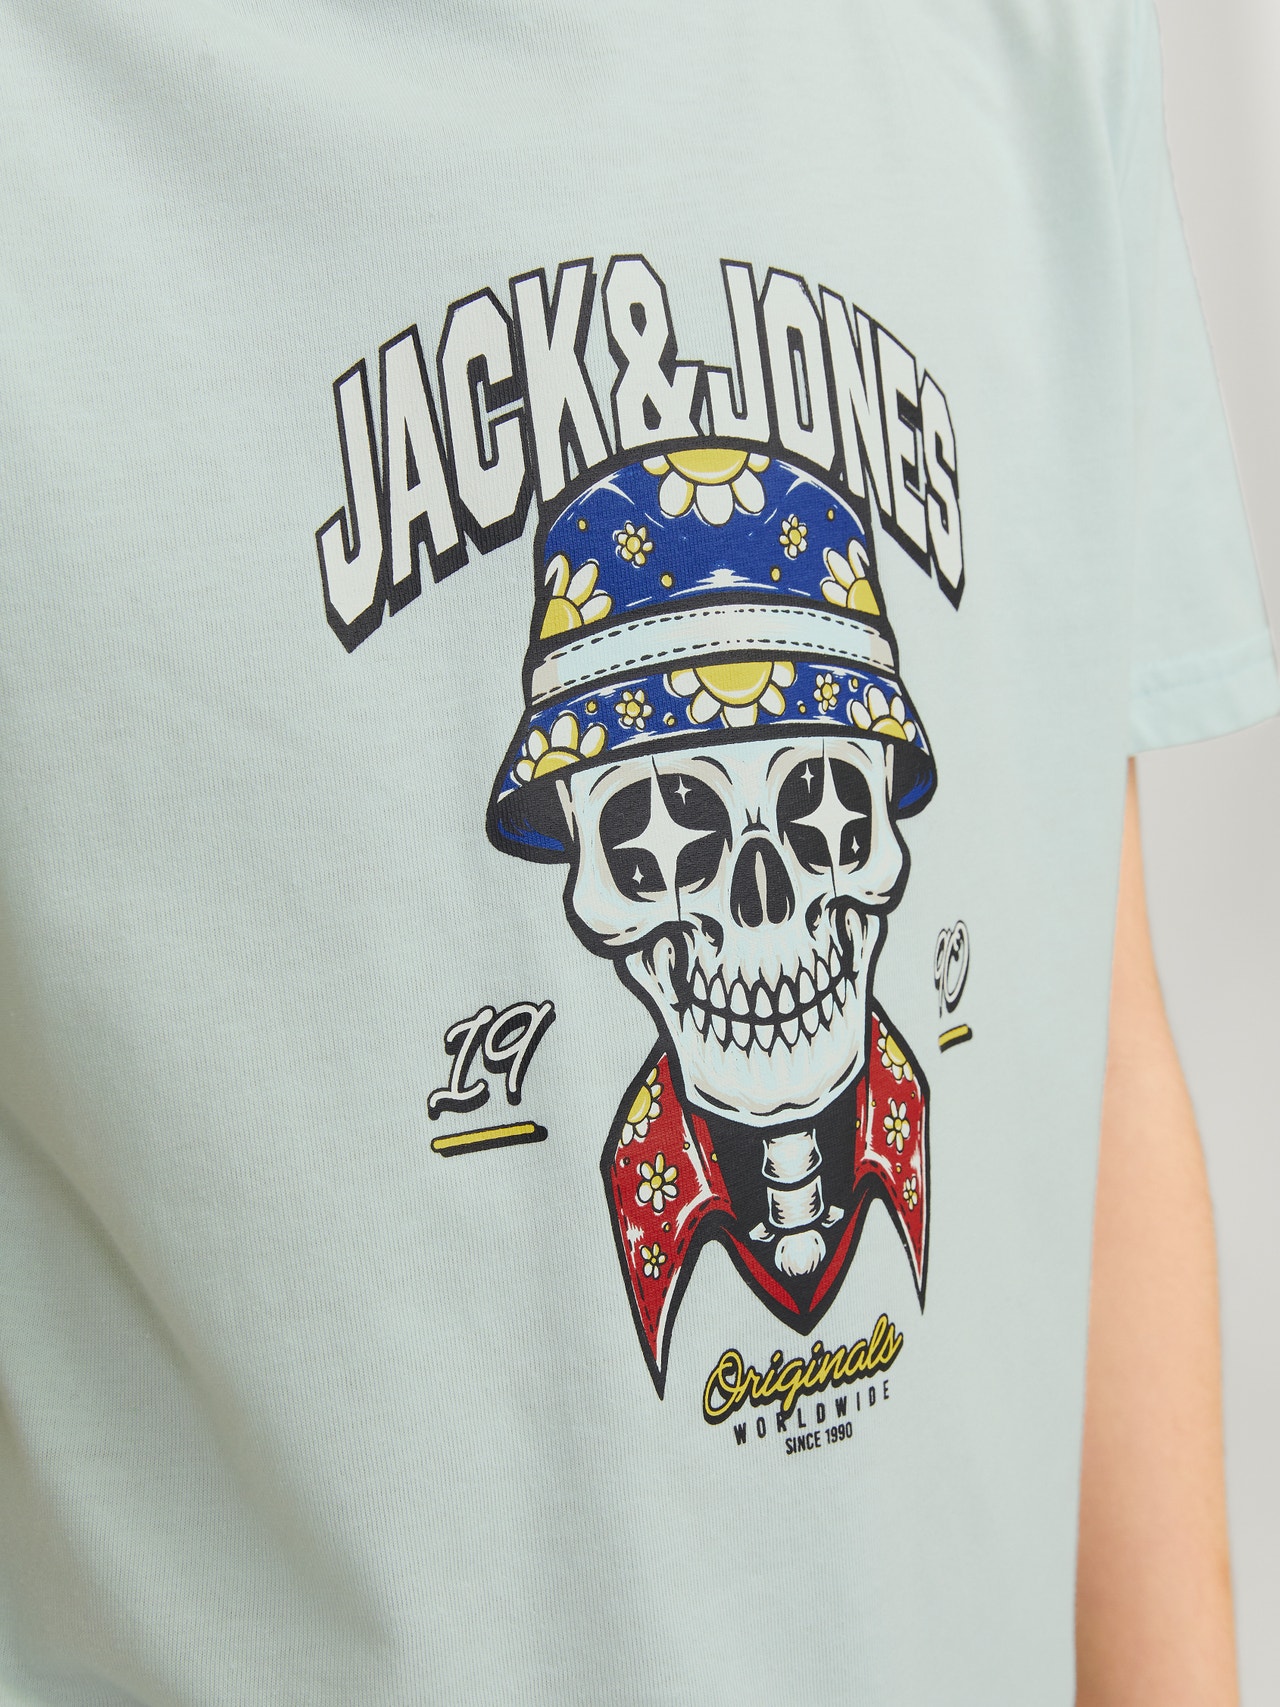 Jack & Jones Trykk T-skjorte For gutter -Skylight - 12257131